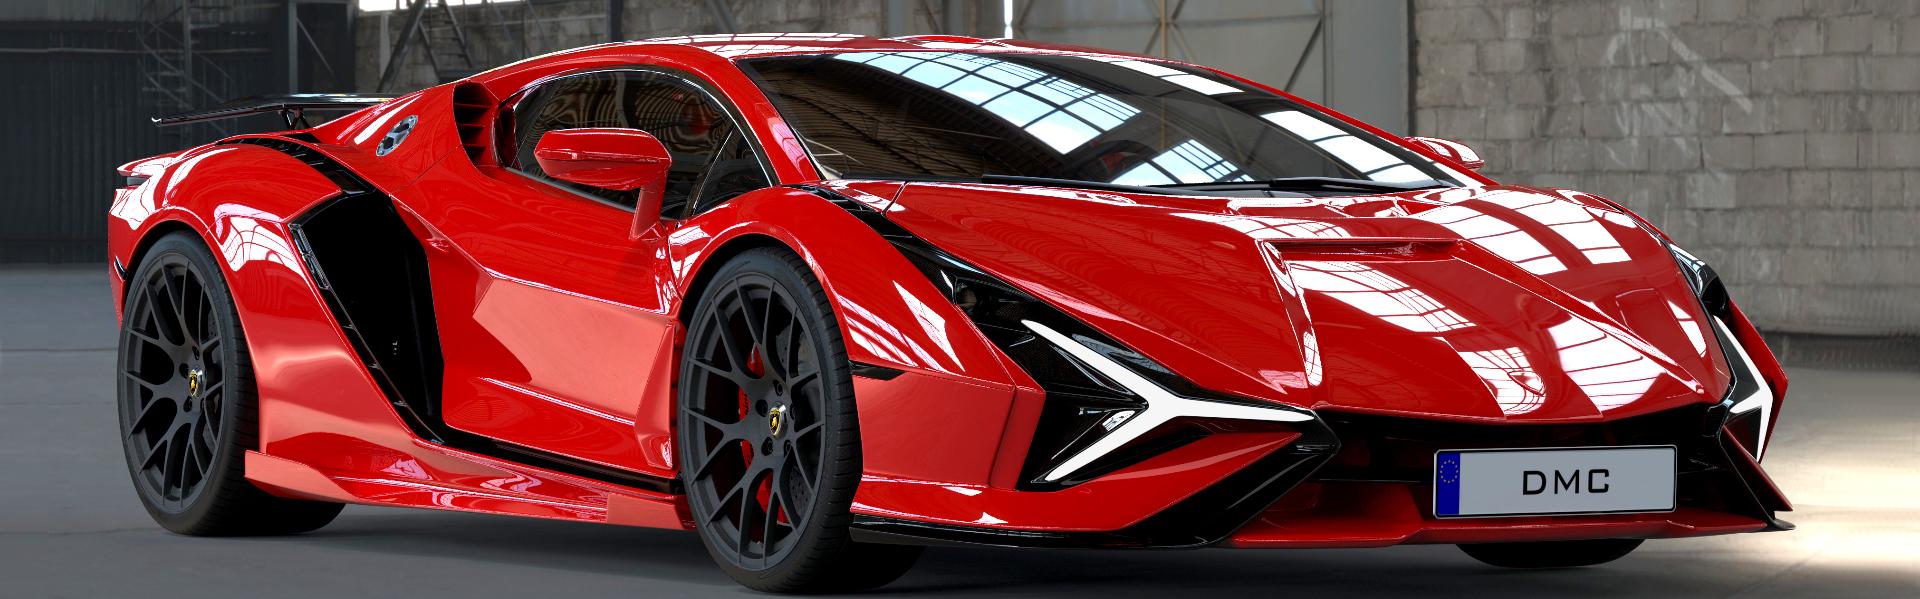 Lamborghini Revuelto Imagined By Dmc